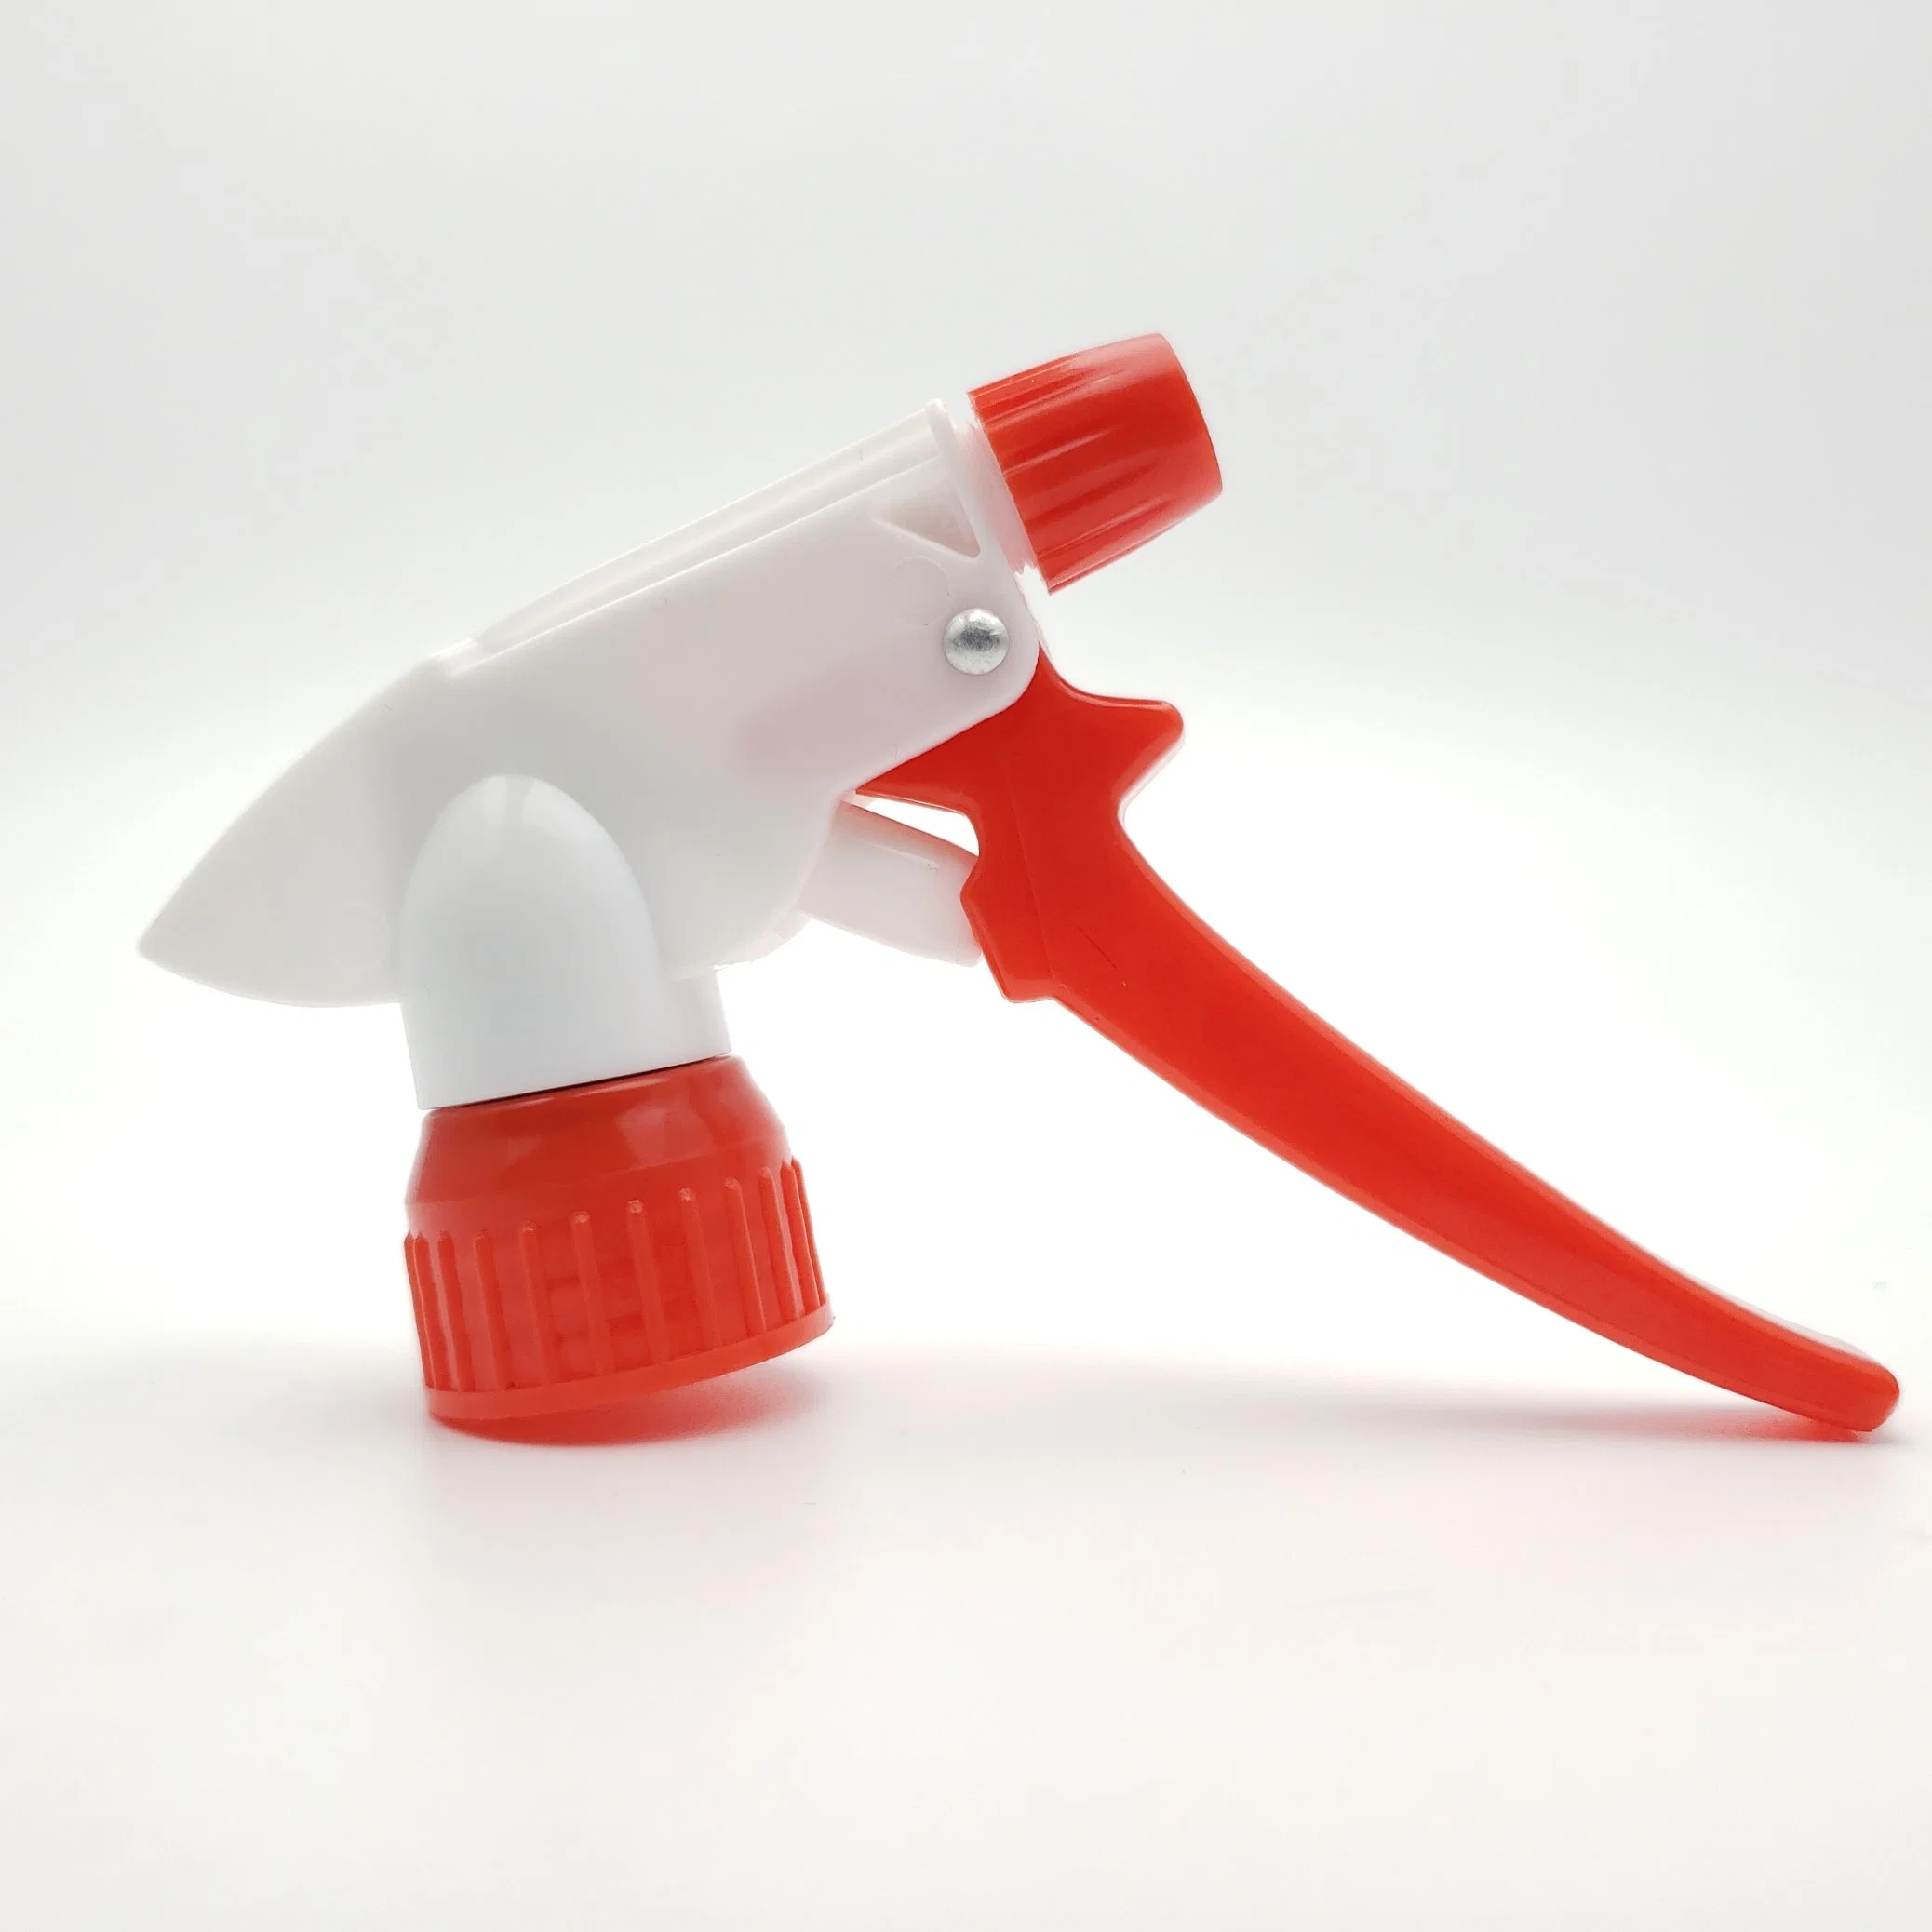 Qualidade elevada de plástico da bomba de Spray para limpeza doméstica